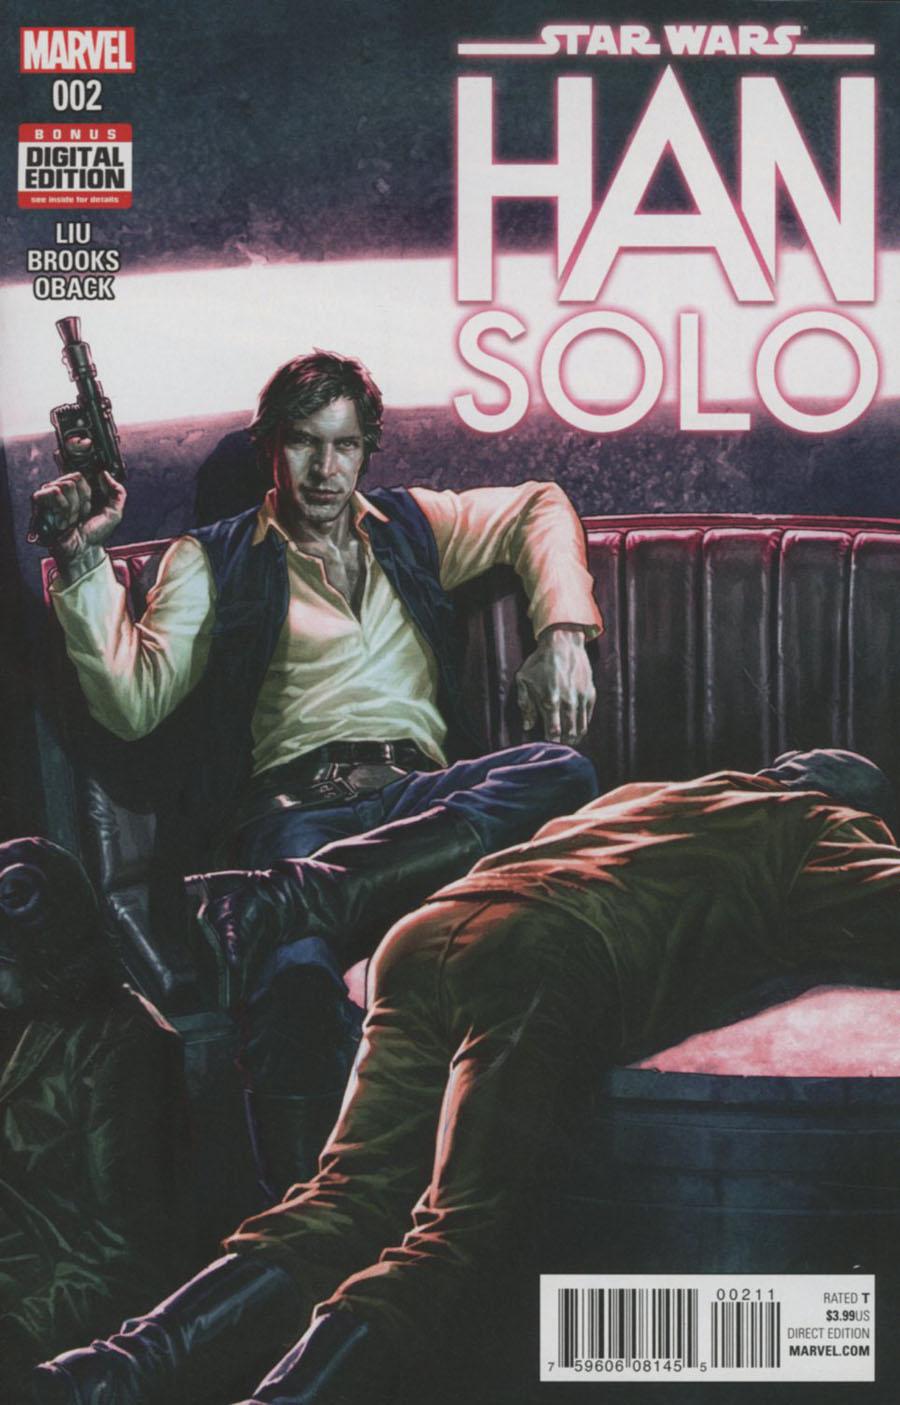 Star Wars Han Solo Vol. 1 #2